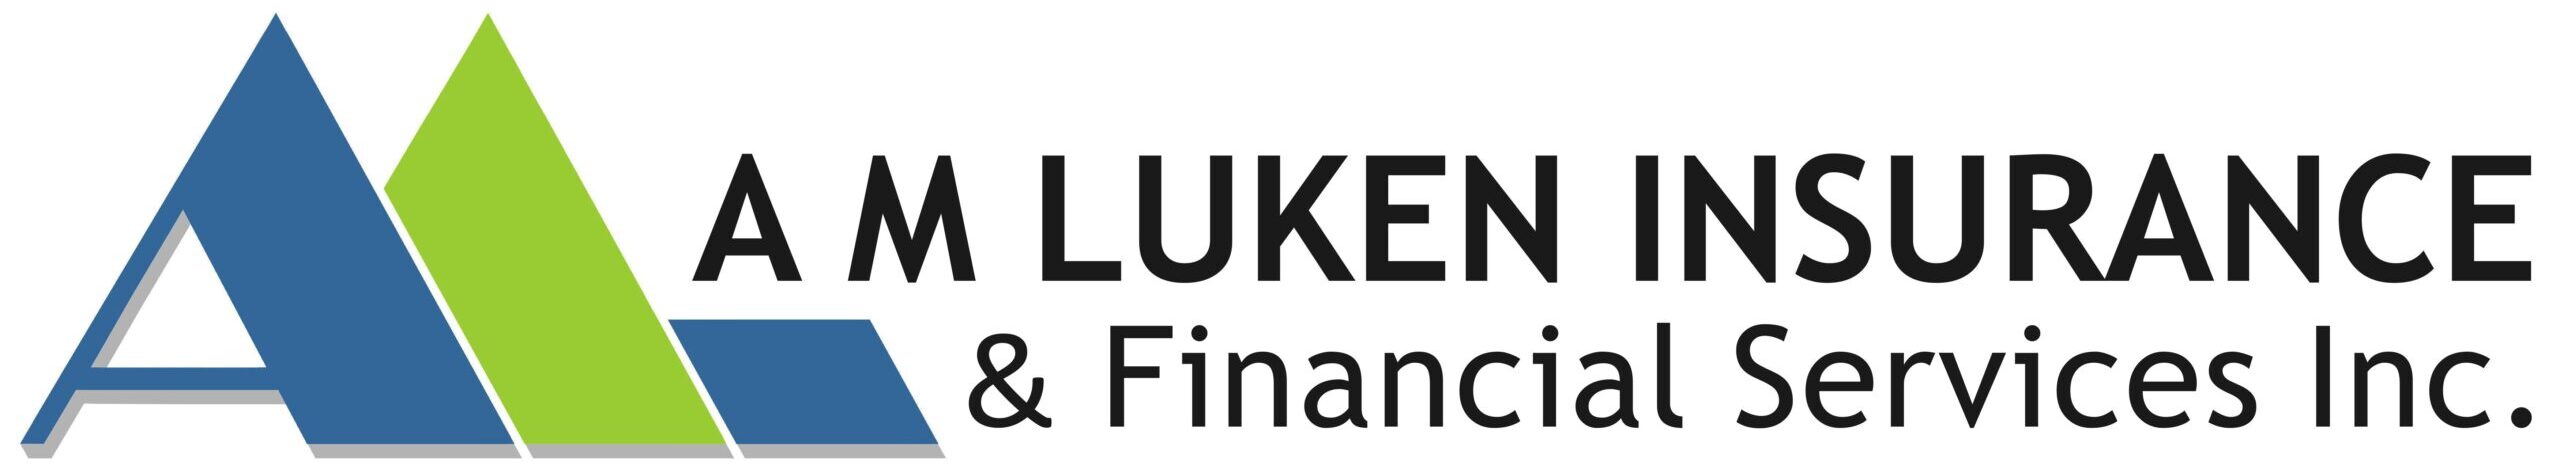 A M Luken Insurance & Financial Services Inc.